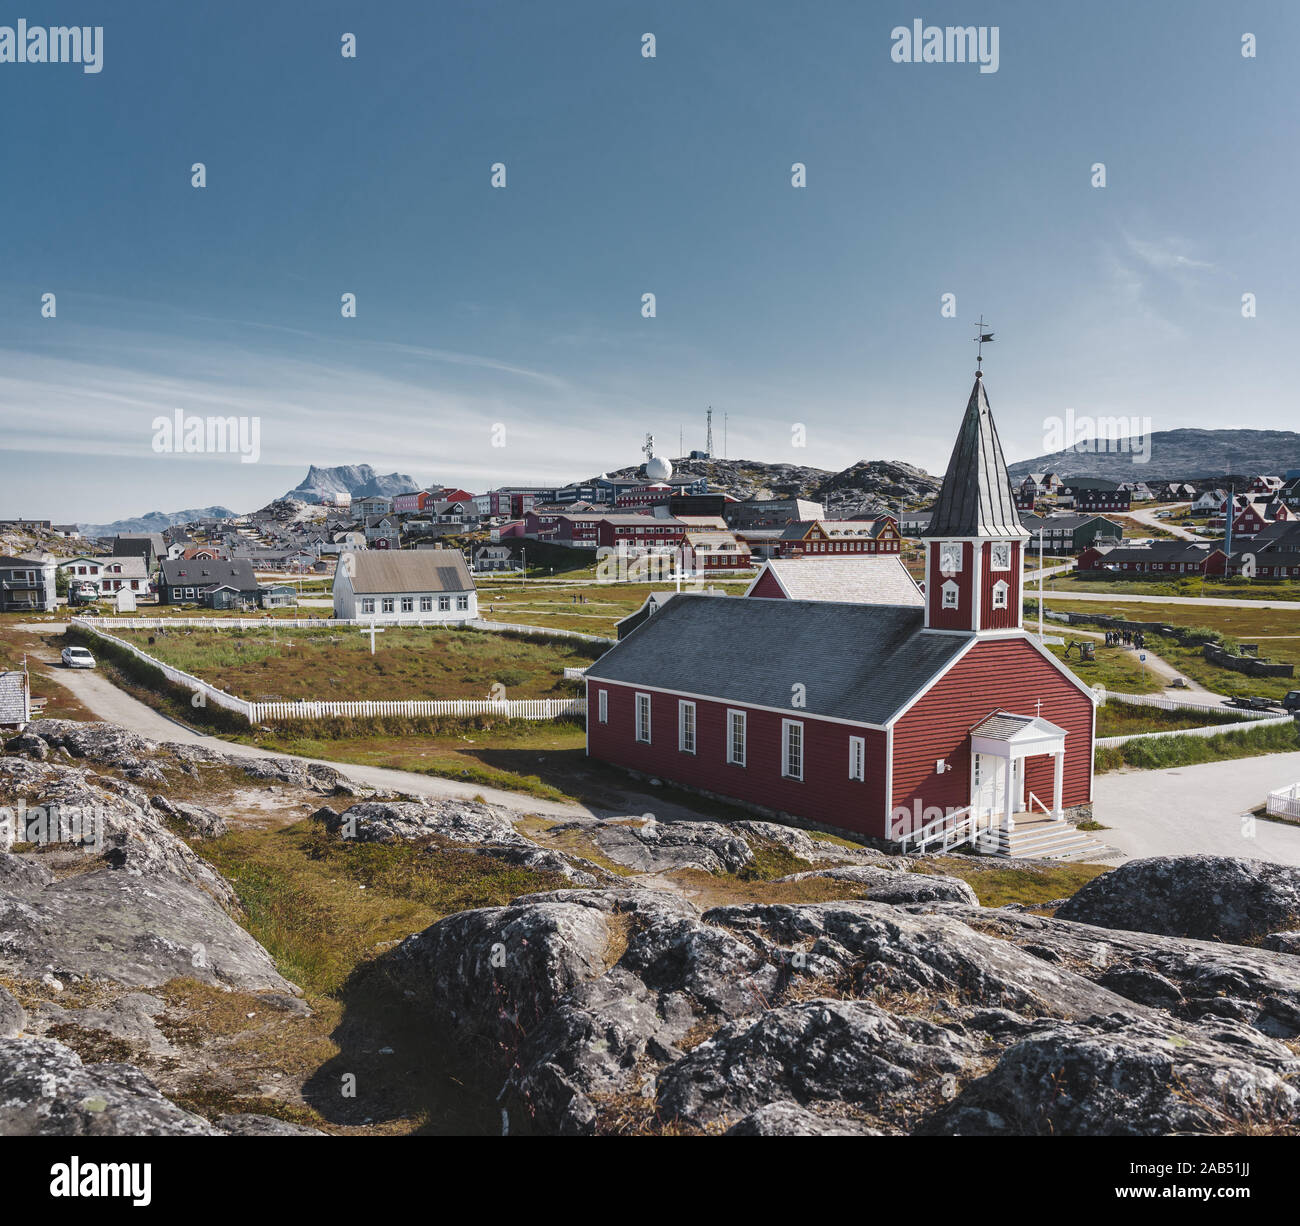 Annaassisitta Oqaluffia Nuuk église cathédrale, l'église de Notre Sauveur dans centre historique de Nuuk. Capitale du Groenland. Journée ensoleillée avec ciel bleu Banque D'Images